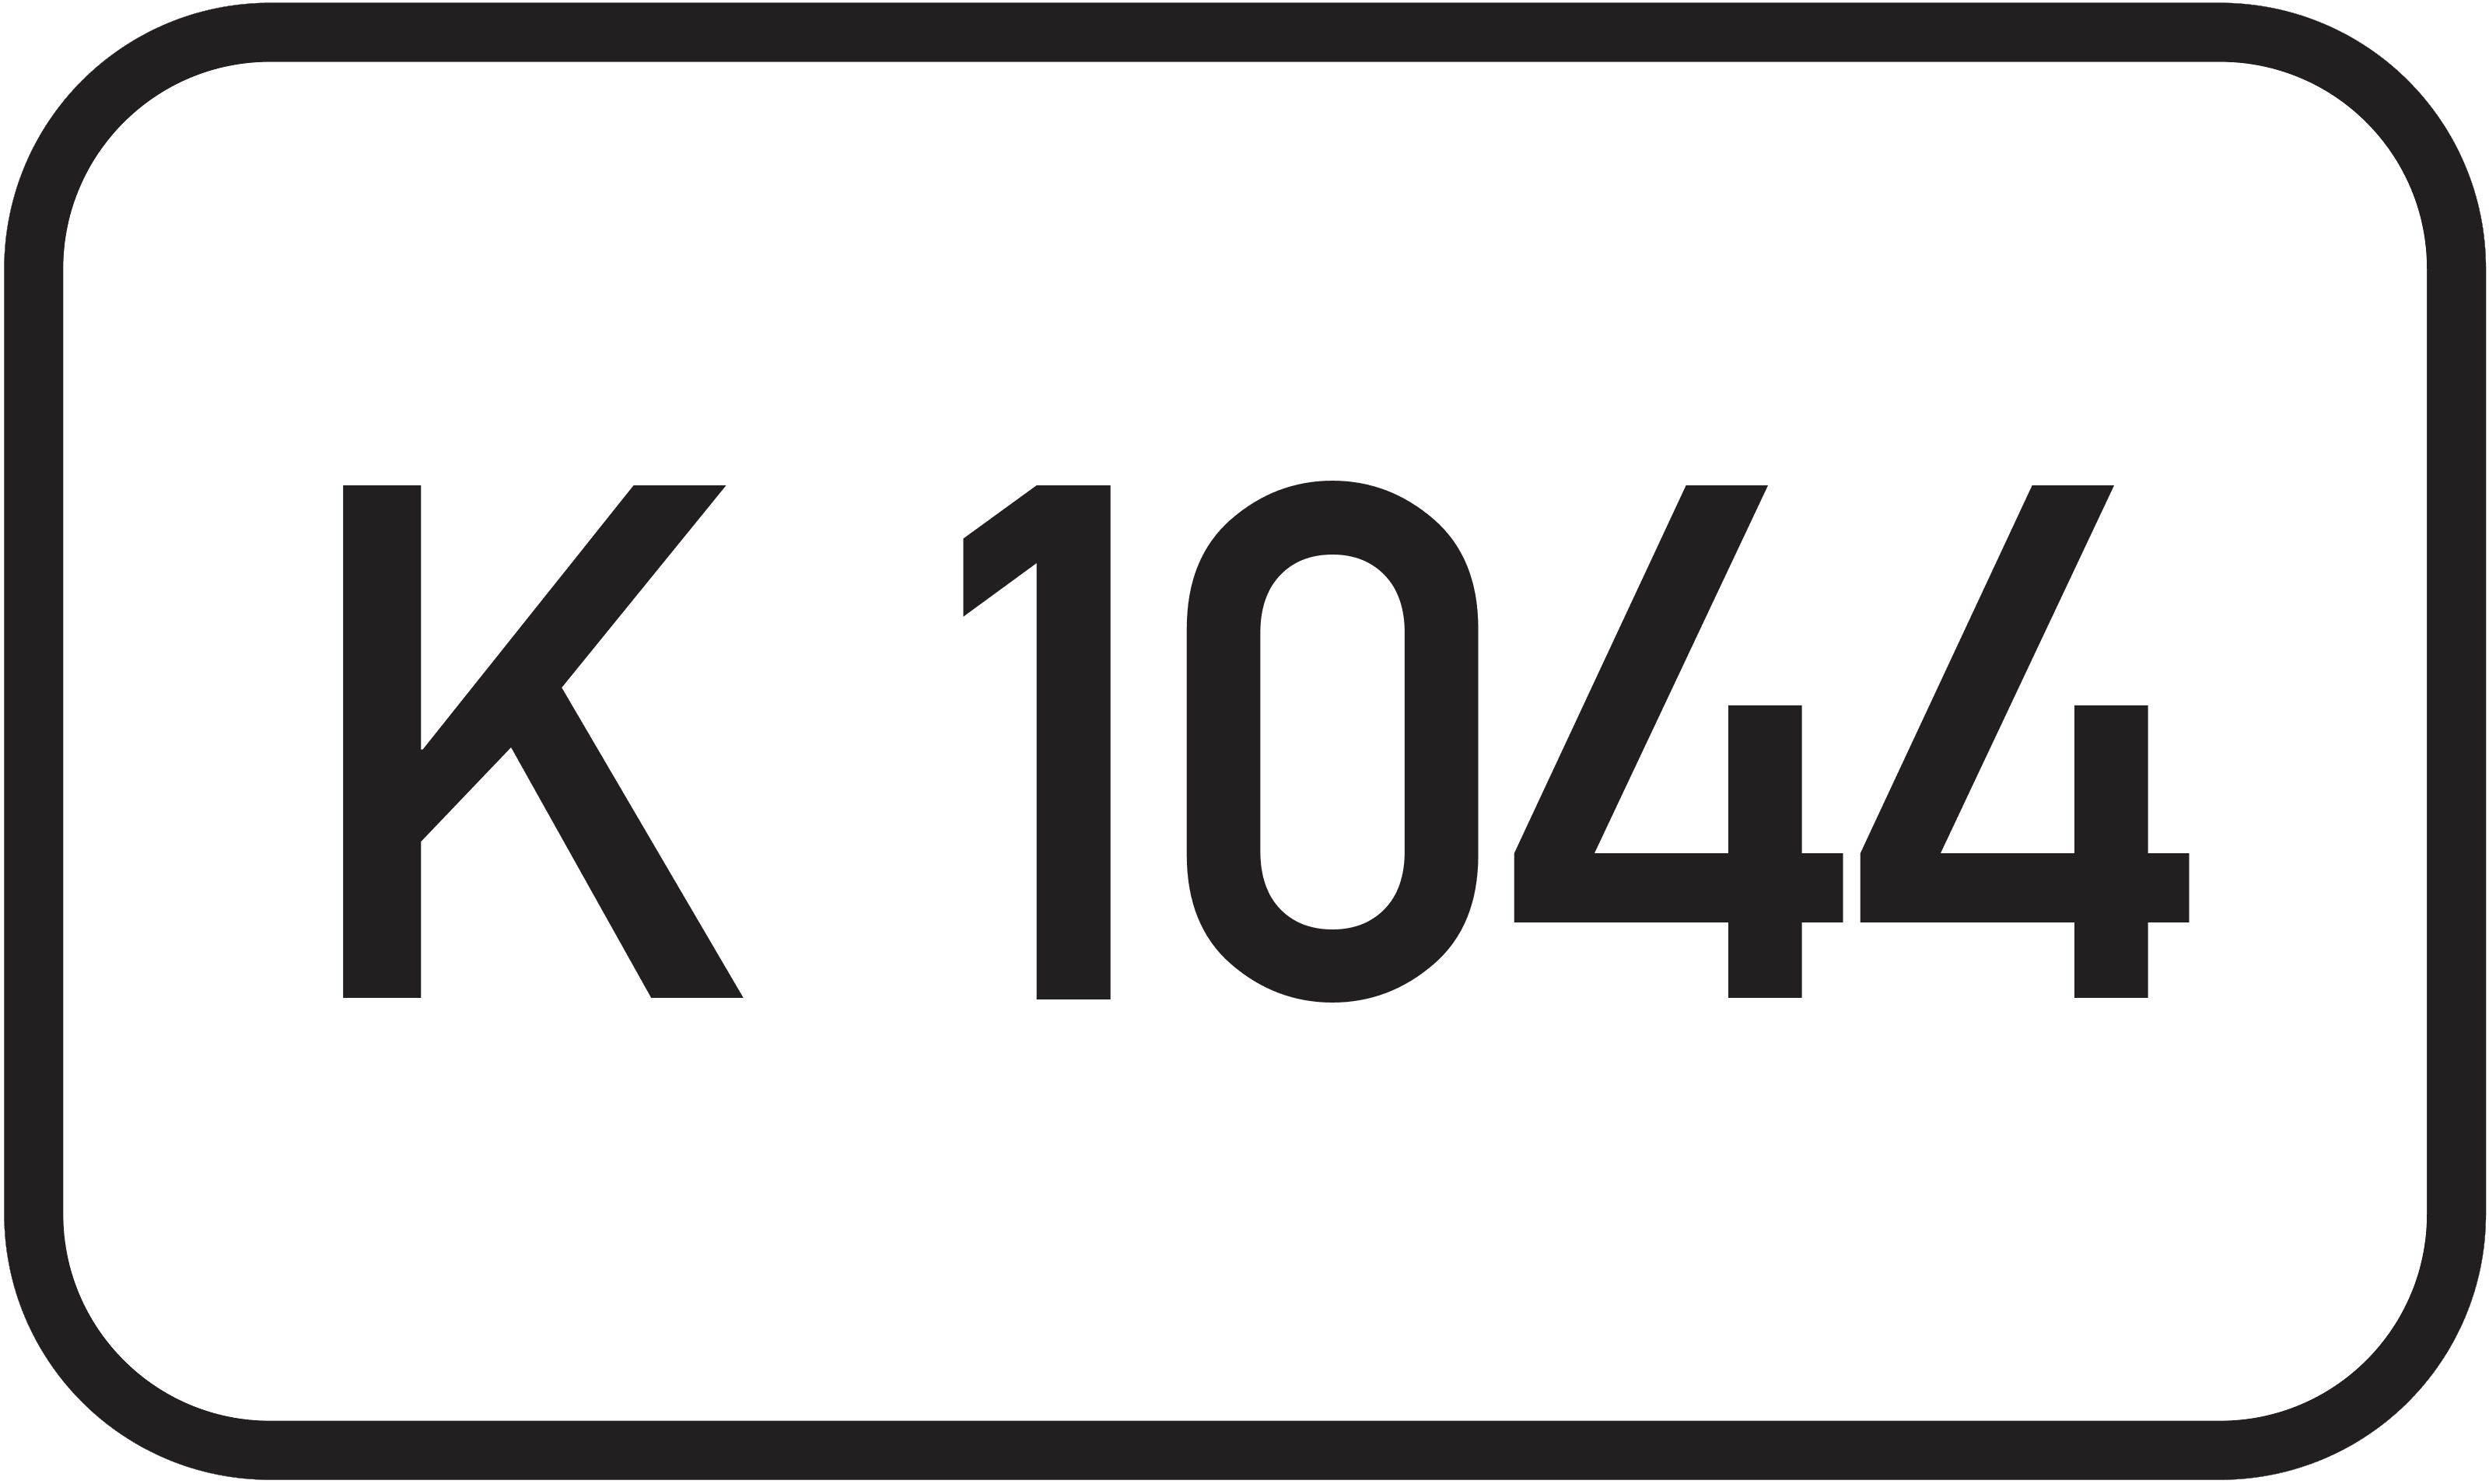 Kreisstraße K 1044